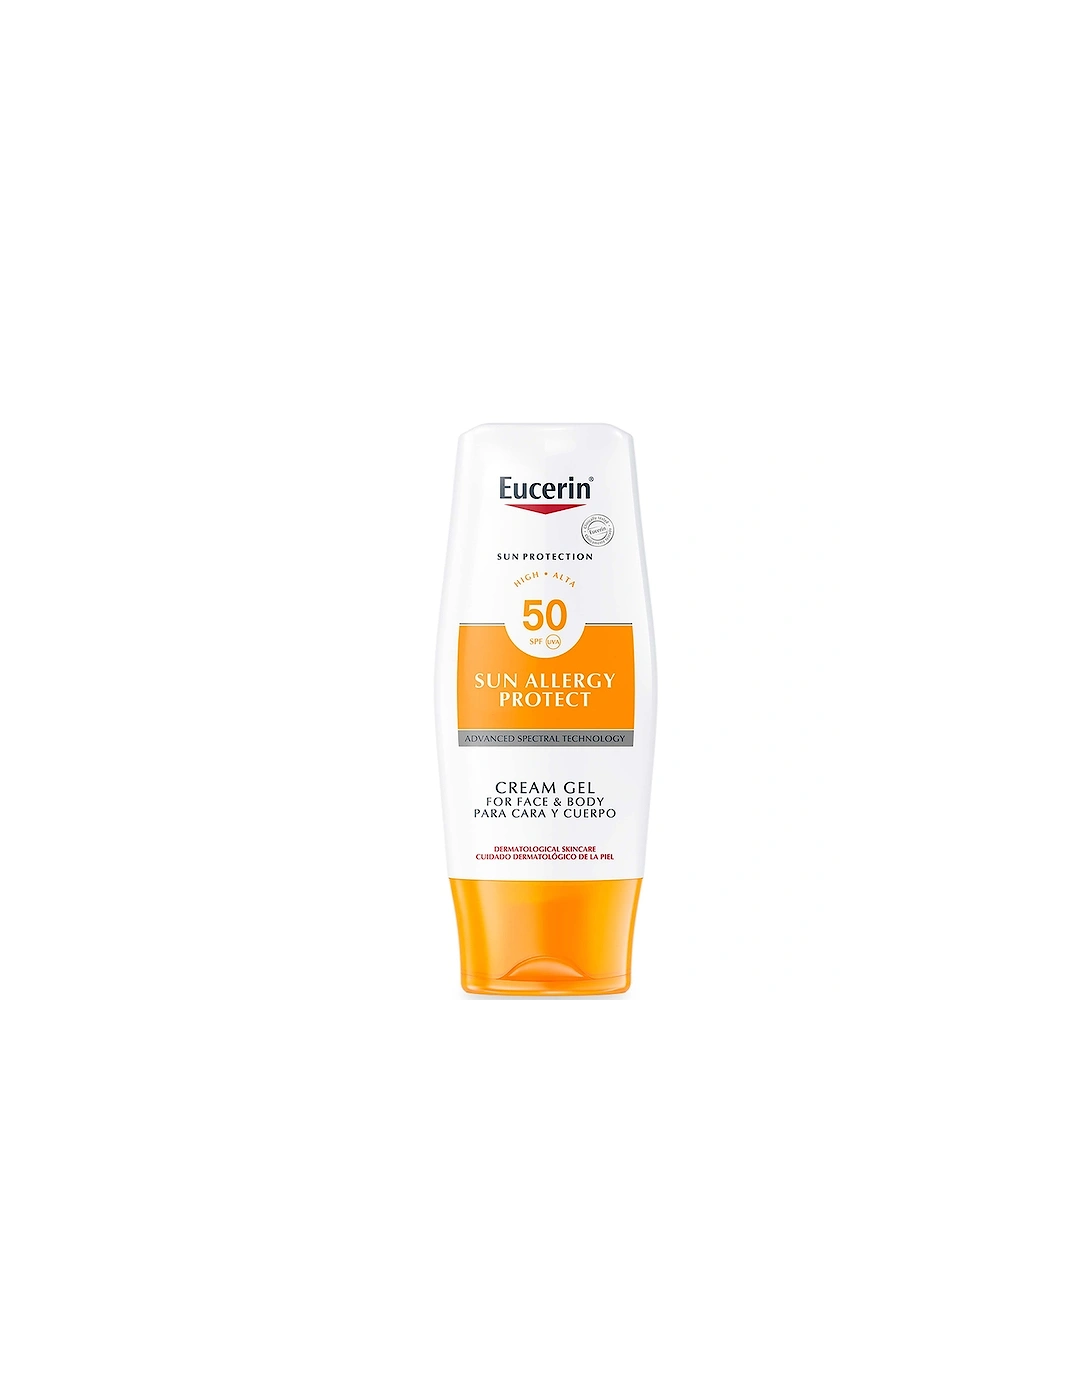 Sun Allergy Protect Sun Crème Gel SPF50 150ml, 2 of 1